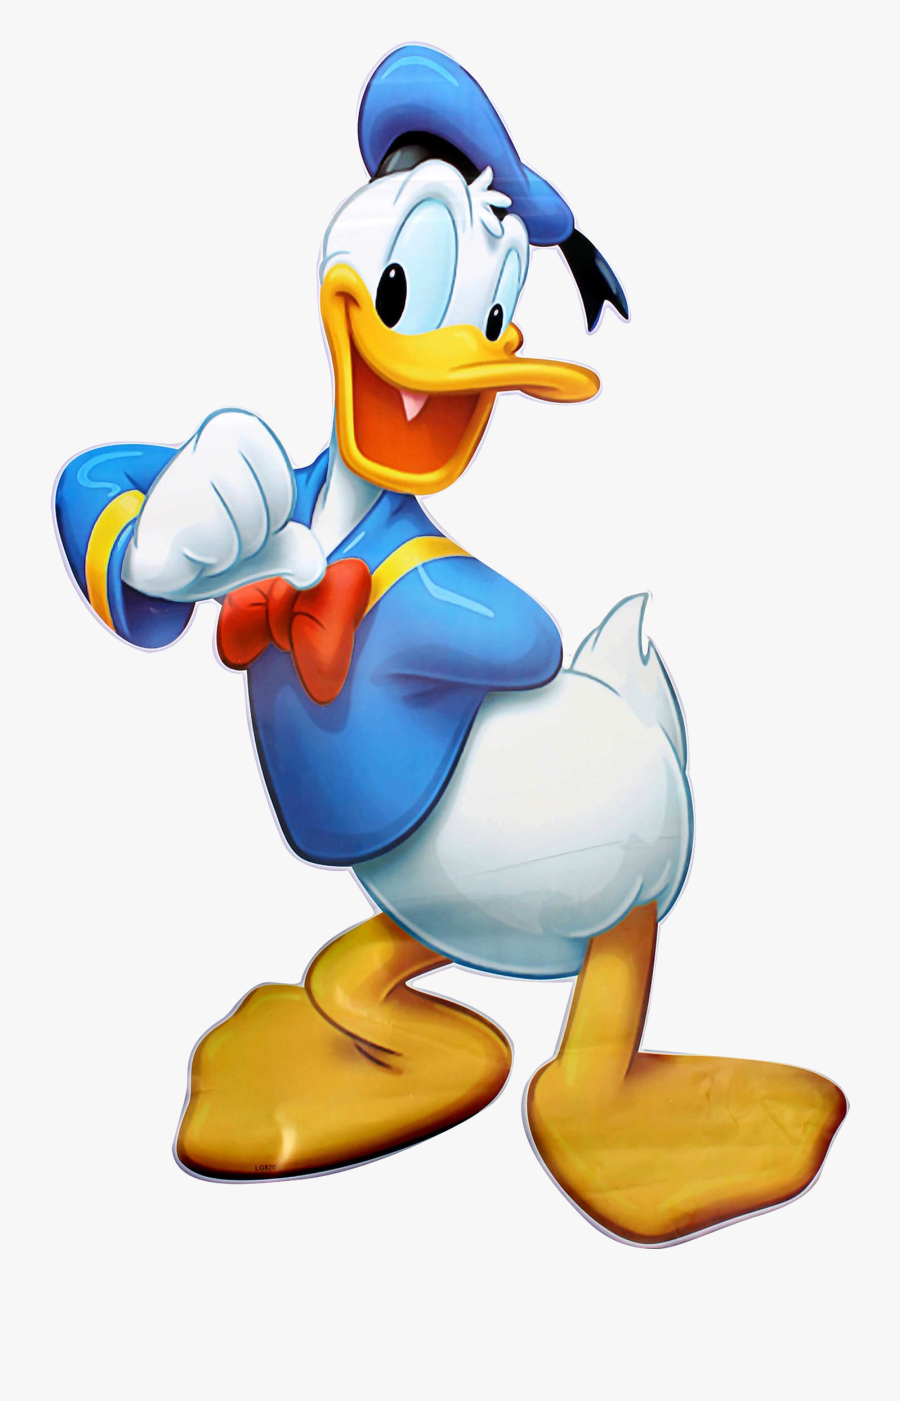 Donald Duck Clipart Famous - Donald Duck Png, Transparent Clipart